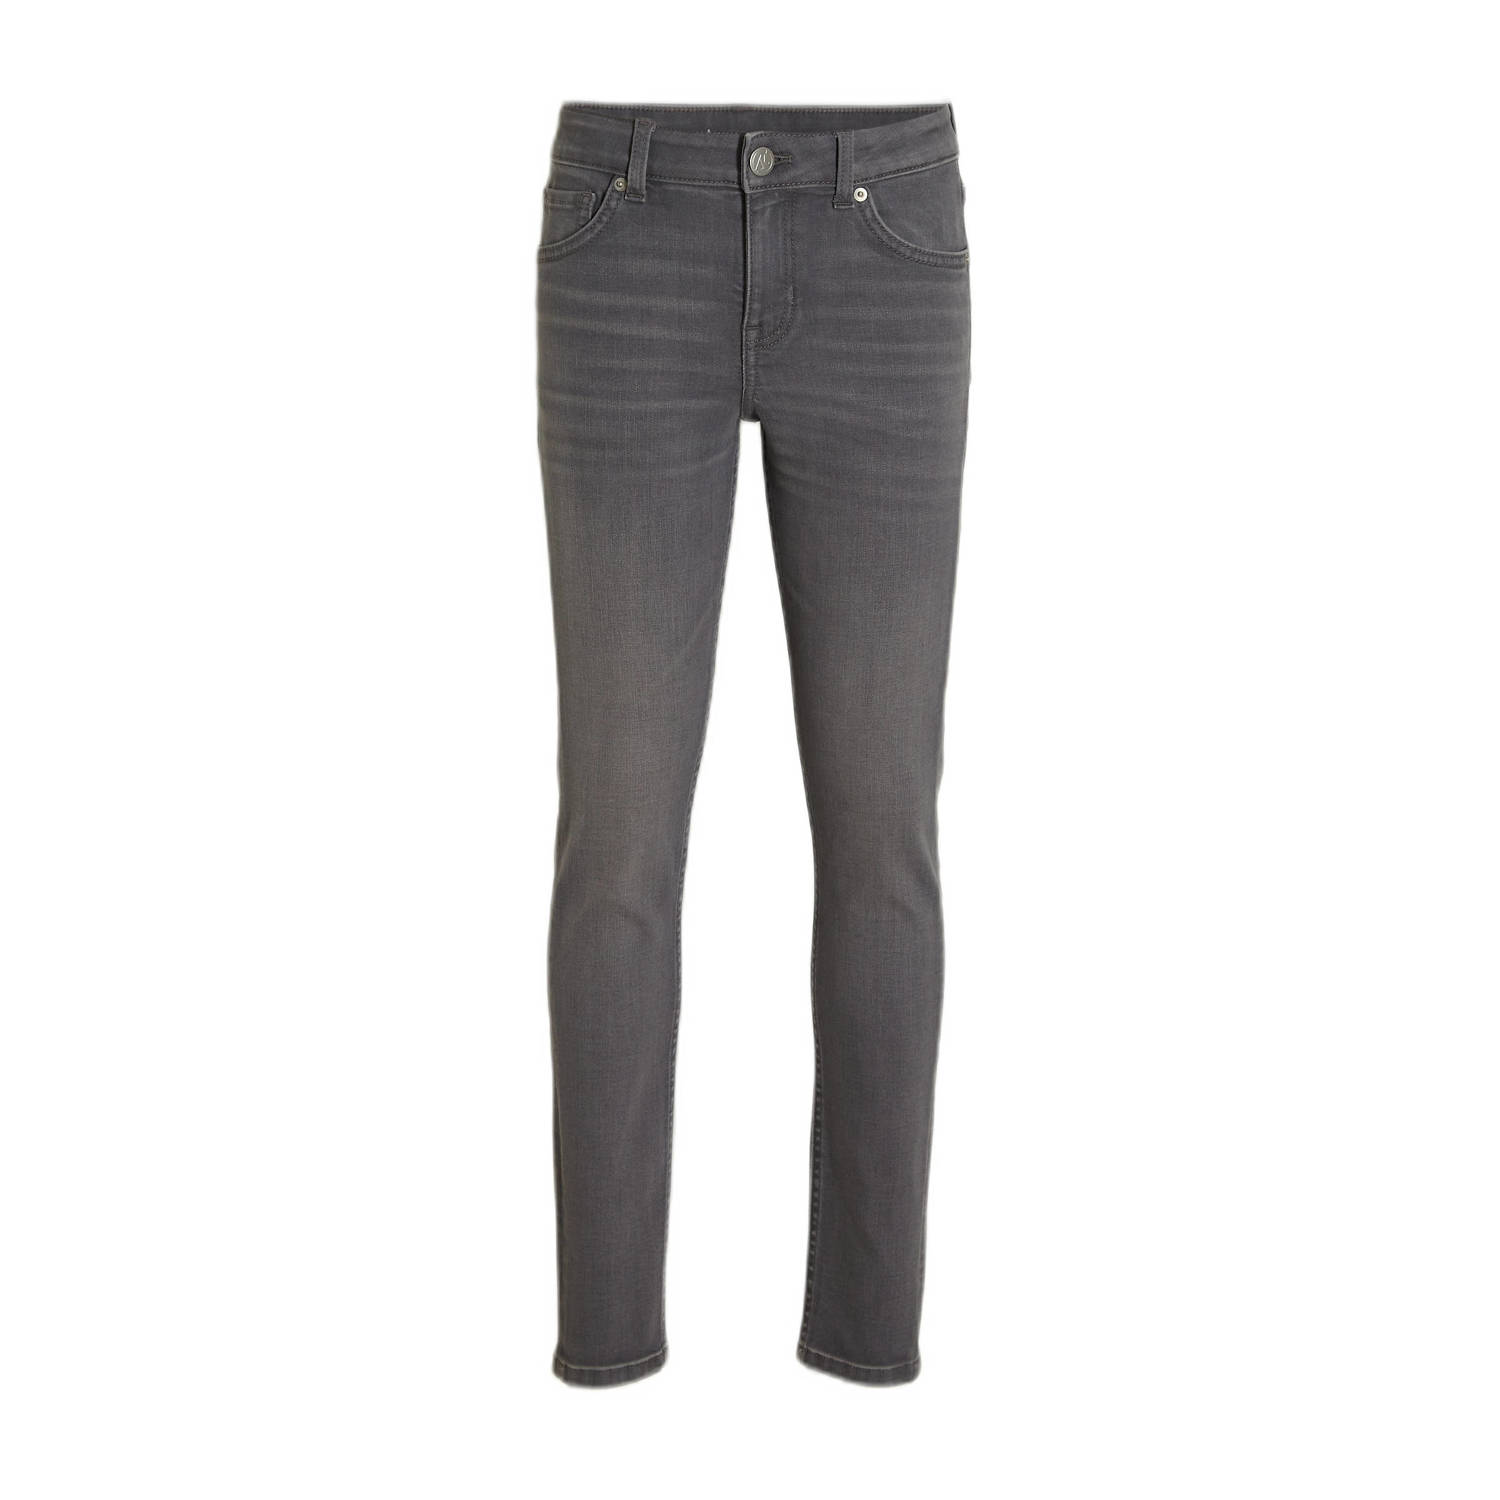 Anytime skinny jeans grijs Jongens Katoen 104 | Jeans van